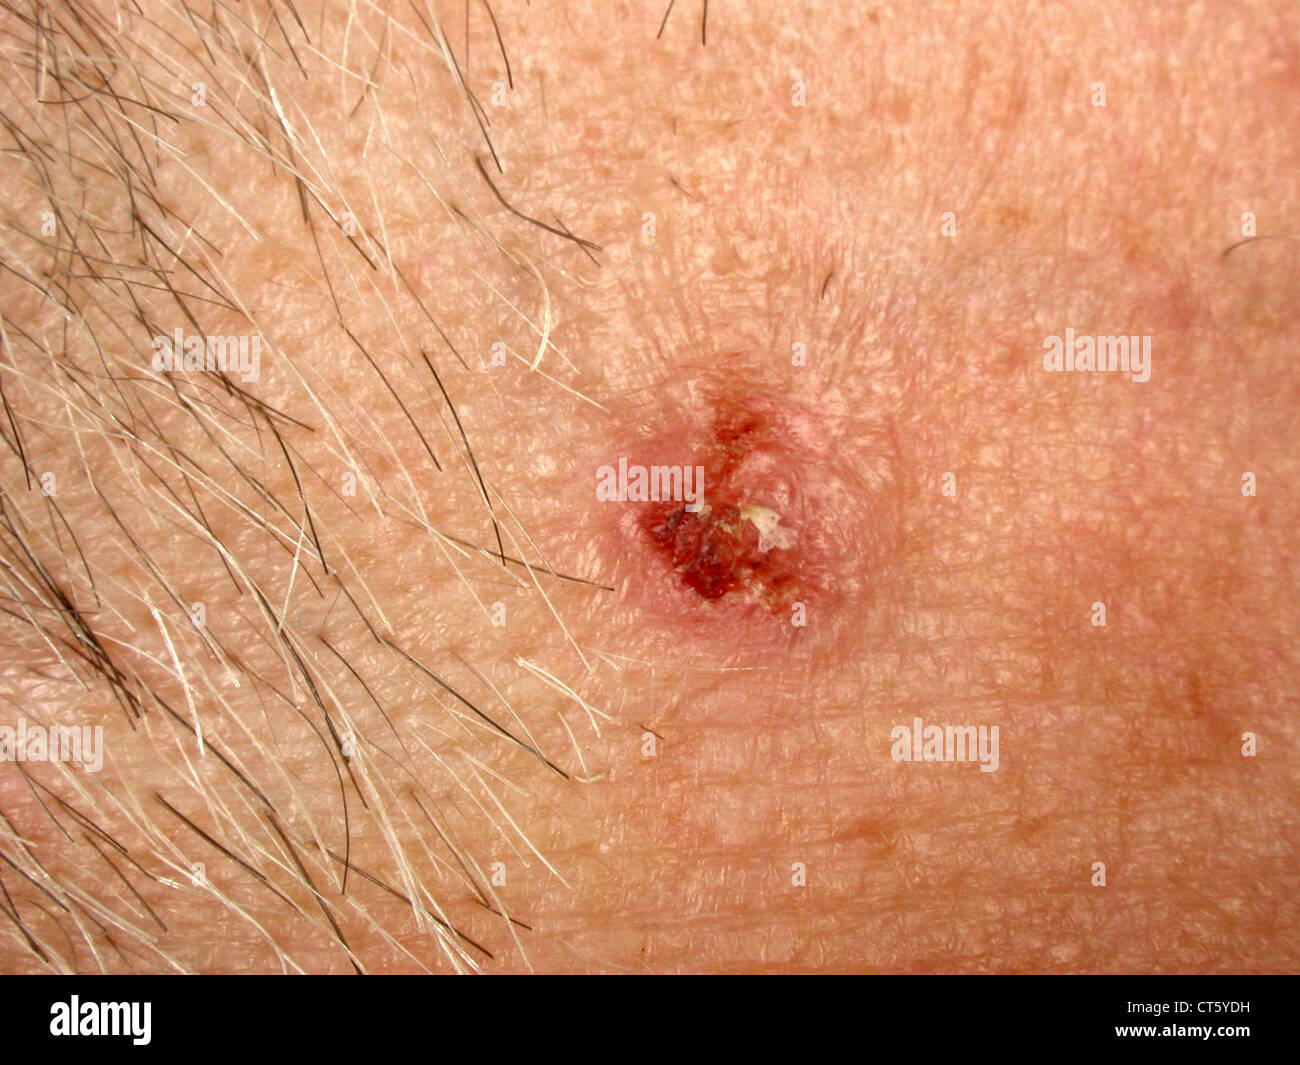 Il tumore maligno della pelle Foto Stock